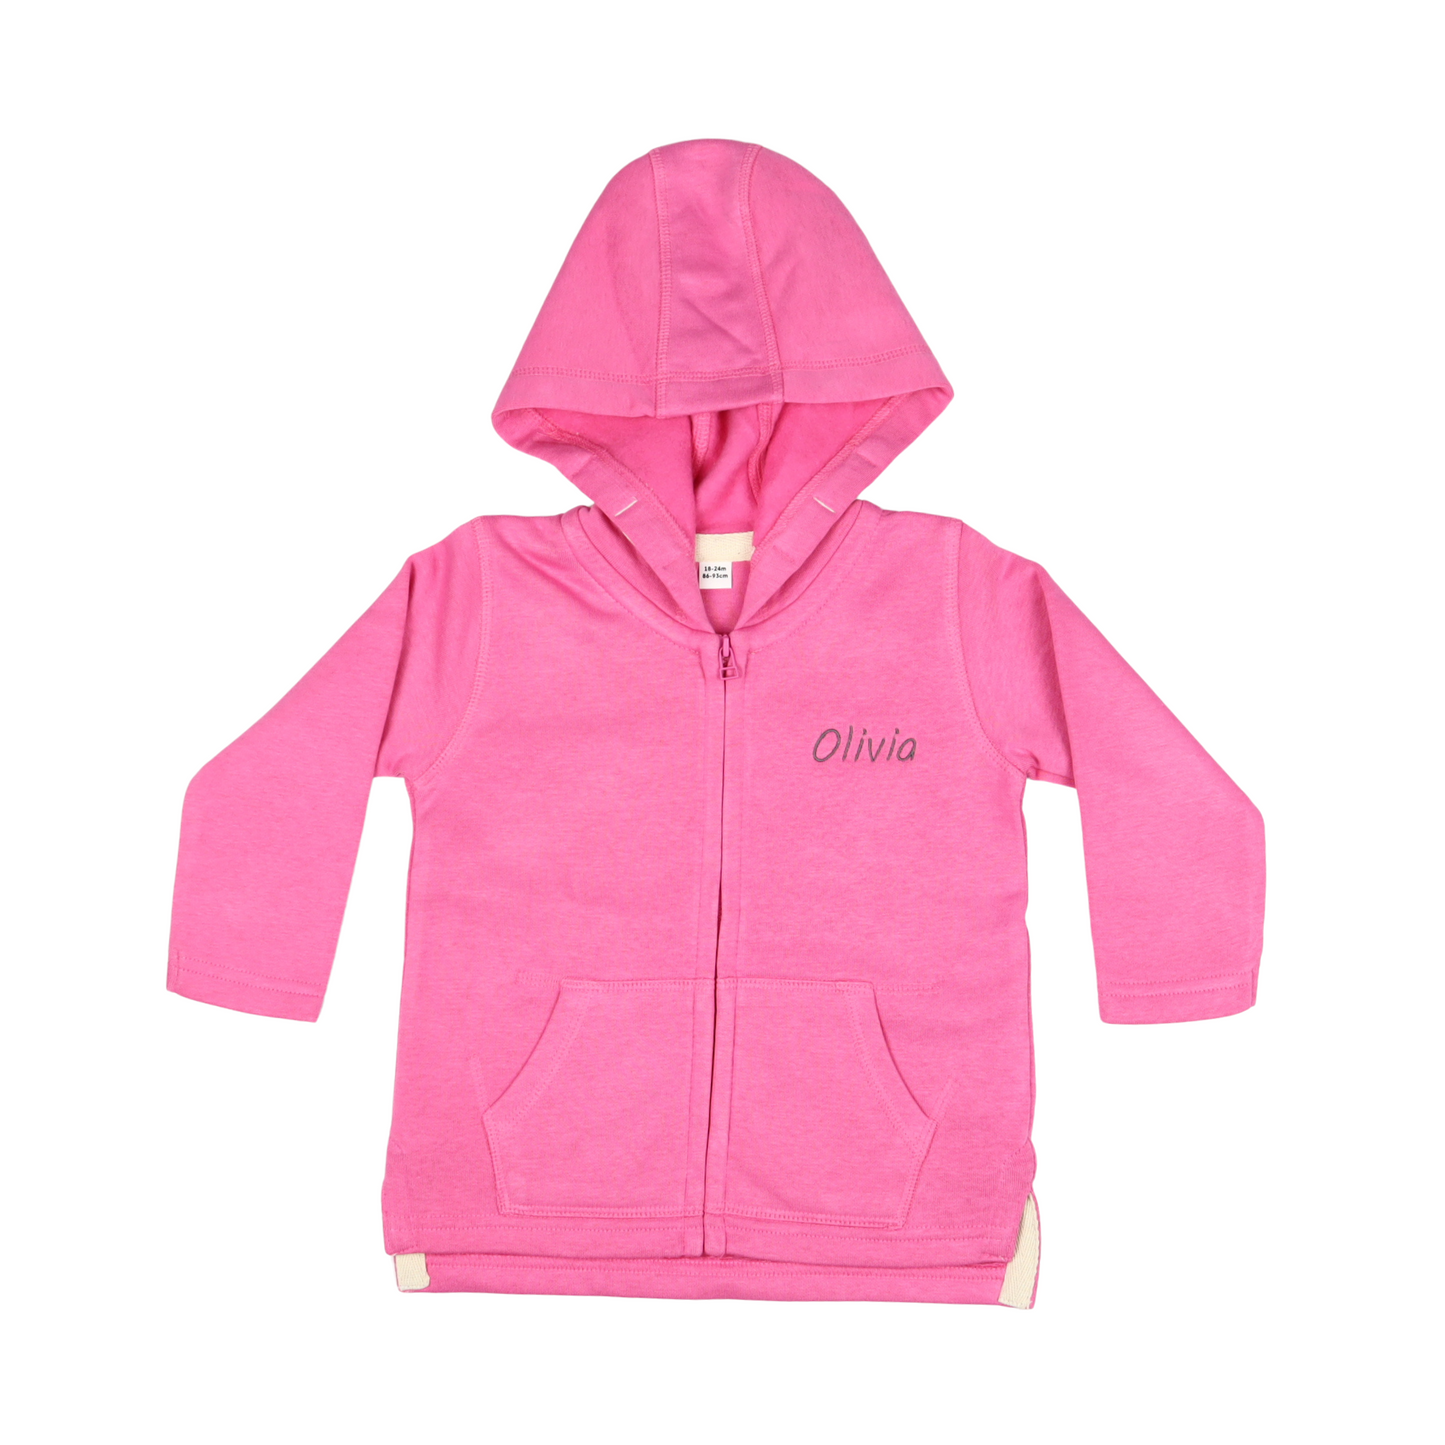 Personalised Baby/Toddler Hoodie - Bubblegum Pink